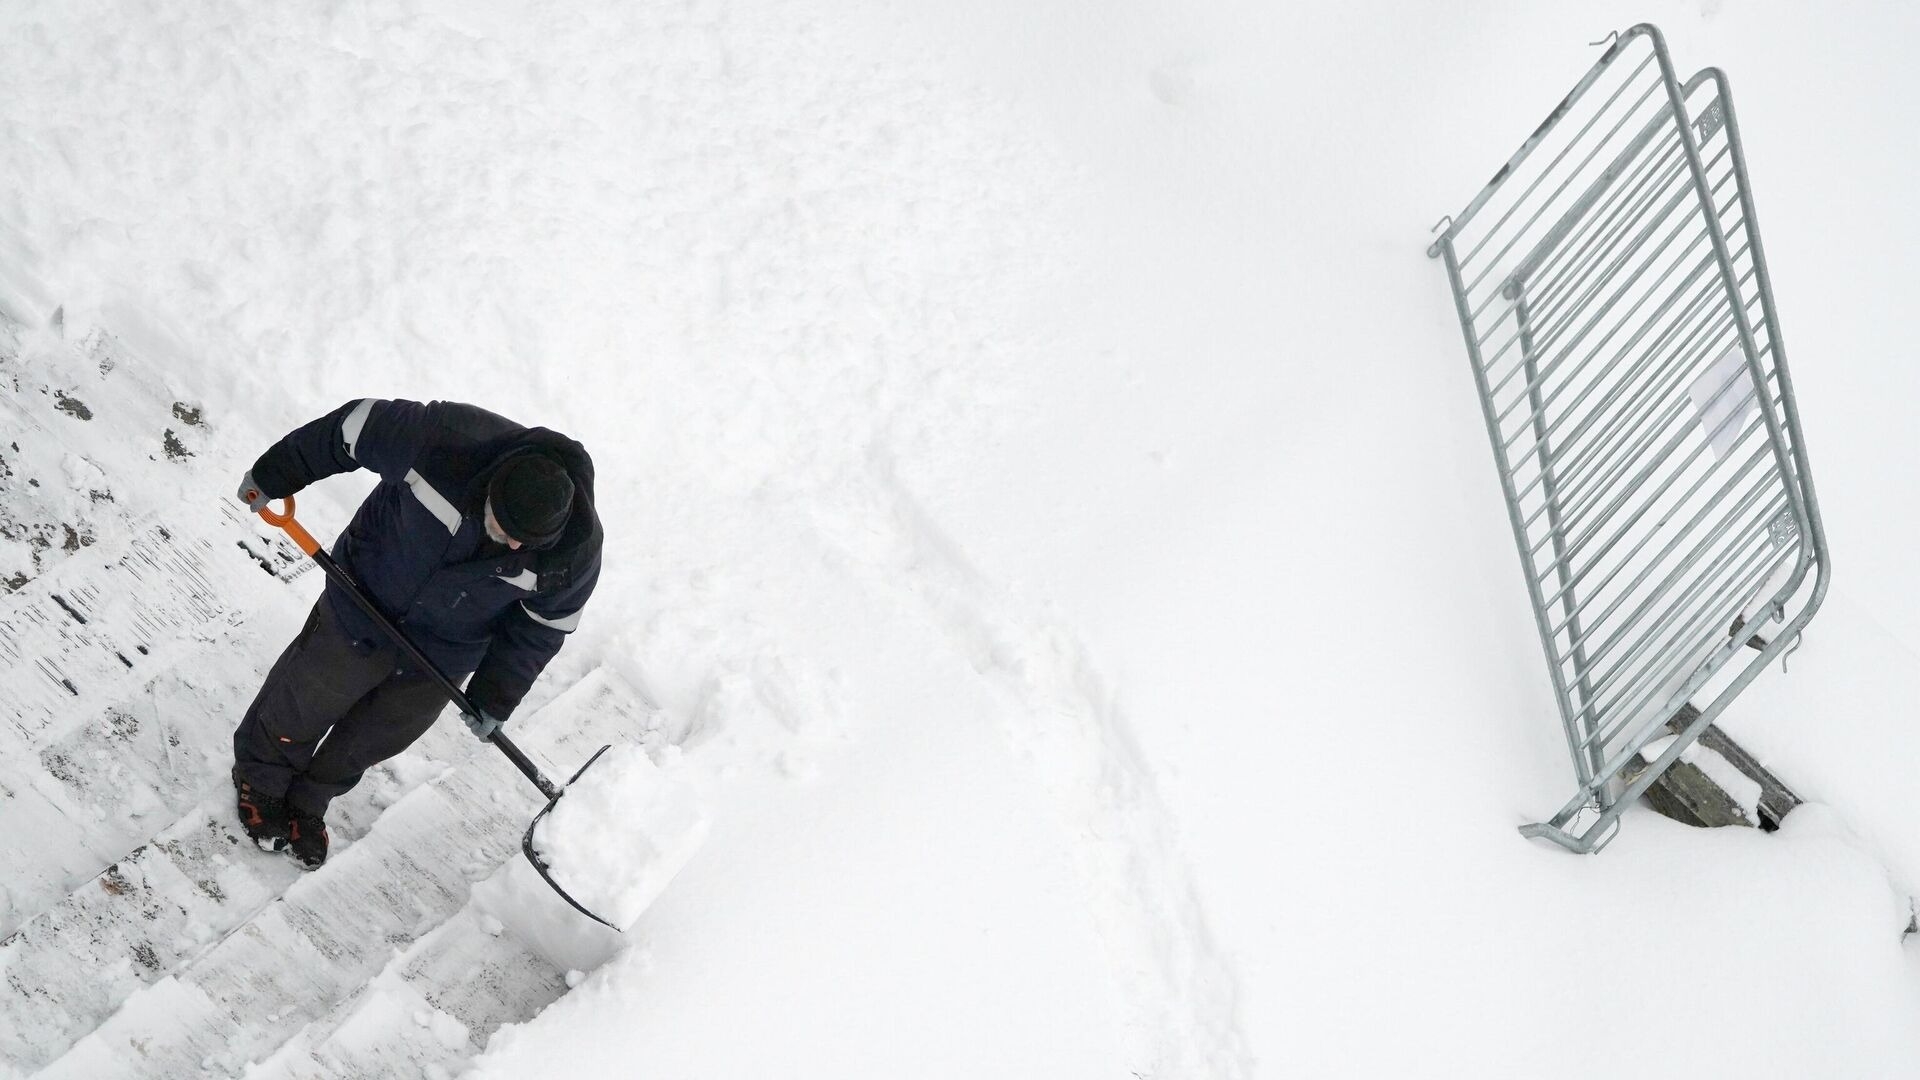 Эксперт: сброс снега со своей территории на чужую может быть признаком самоуправства